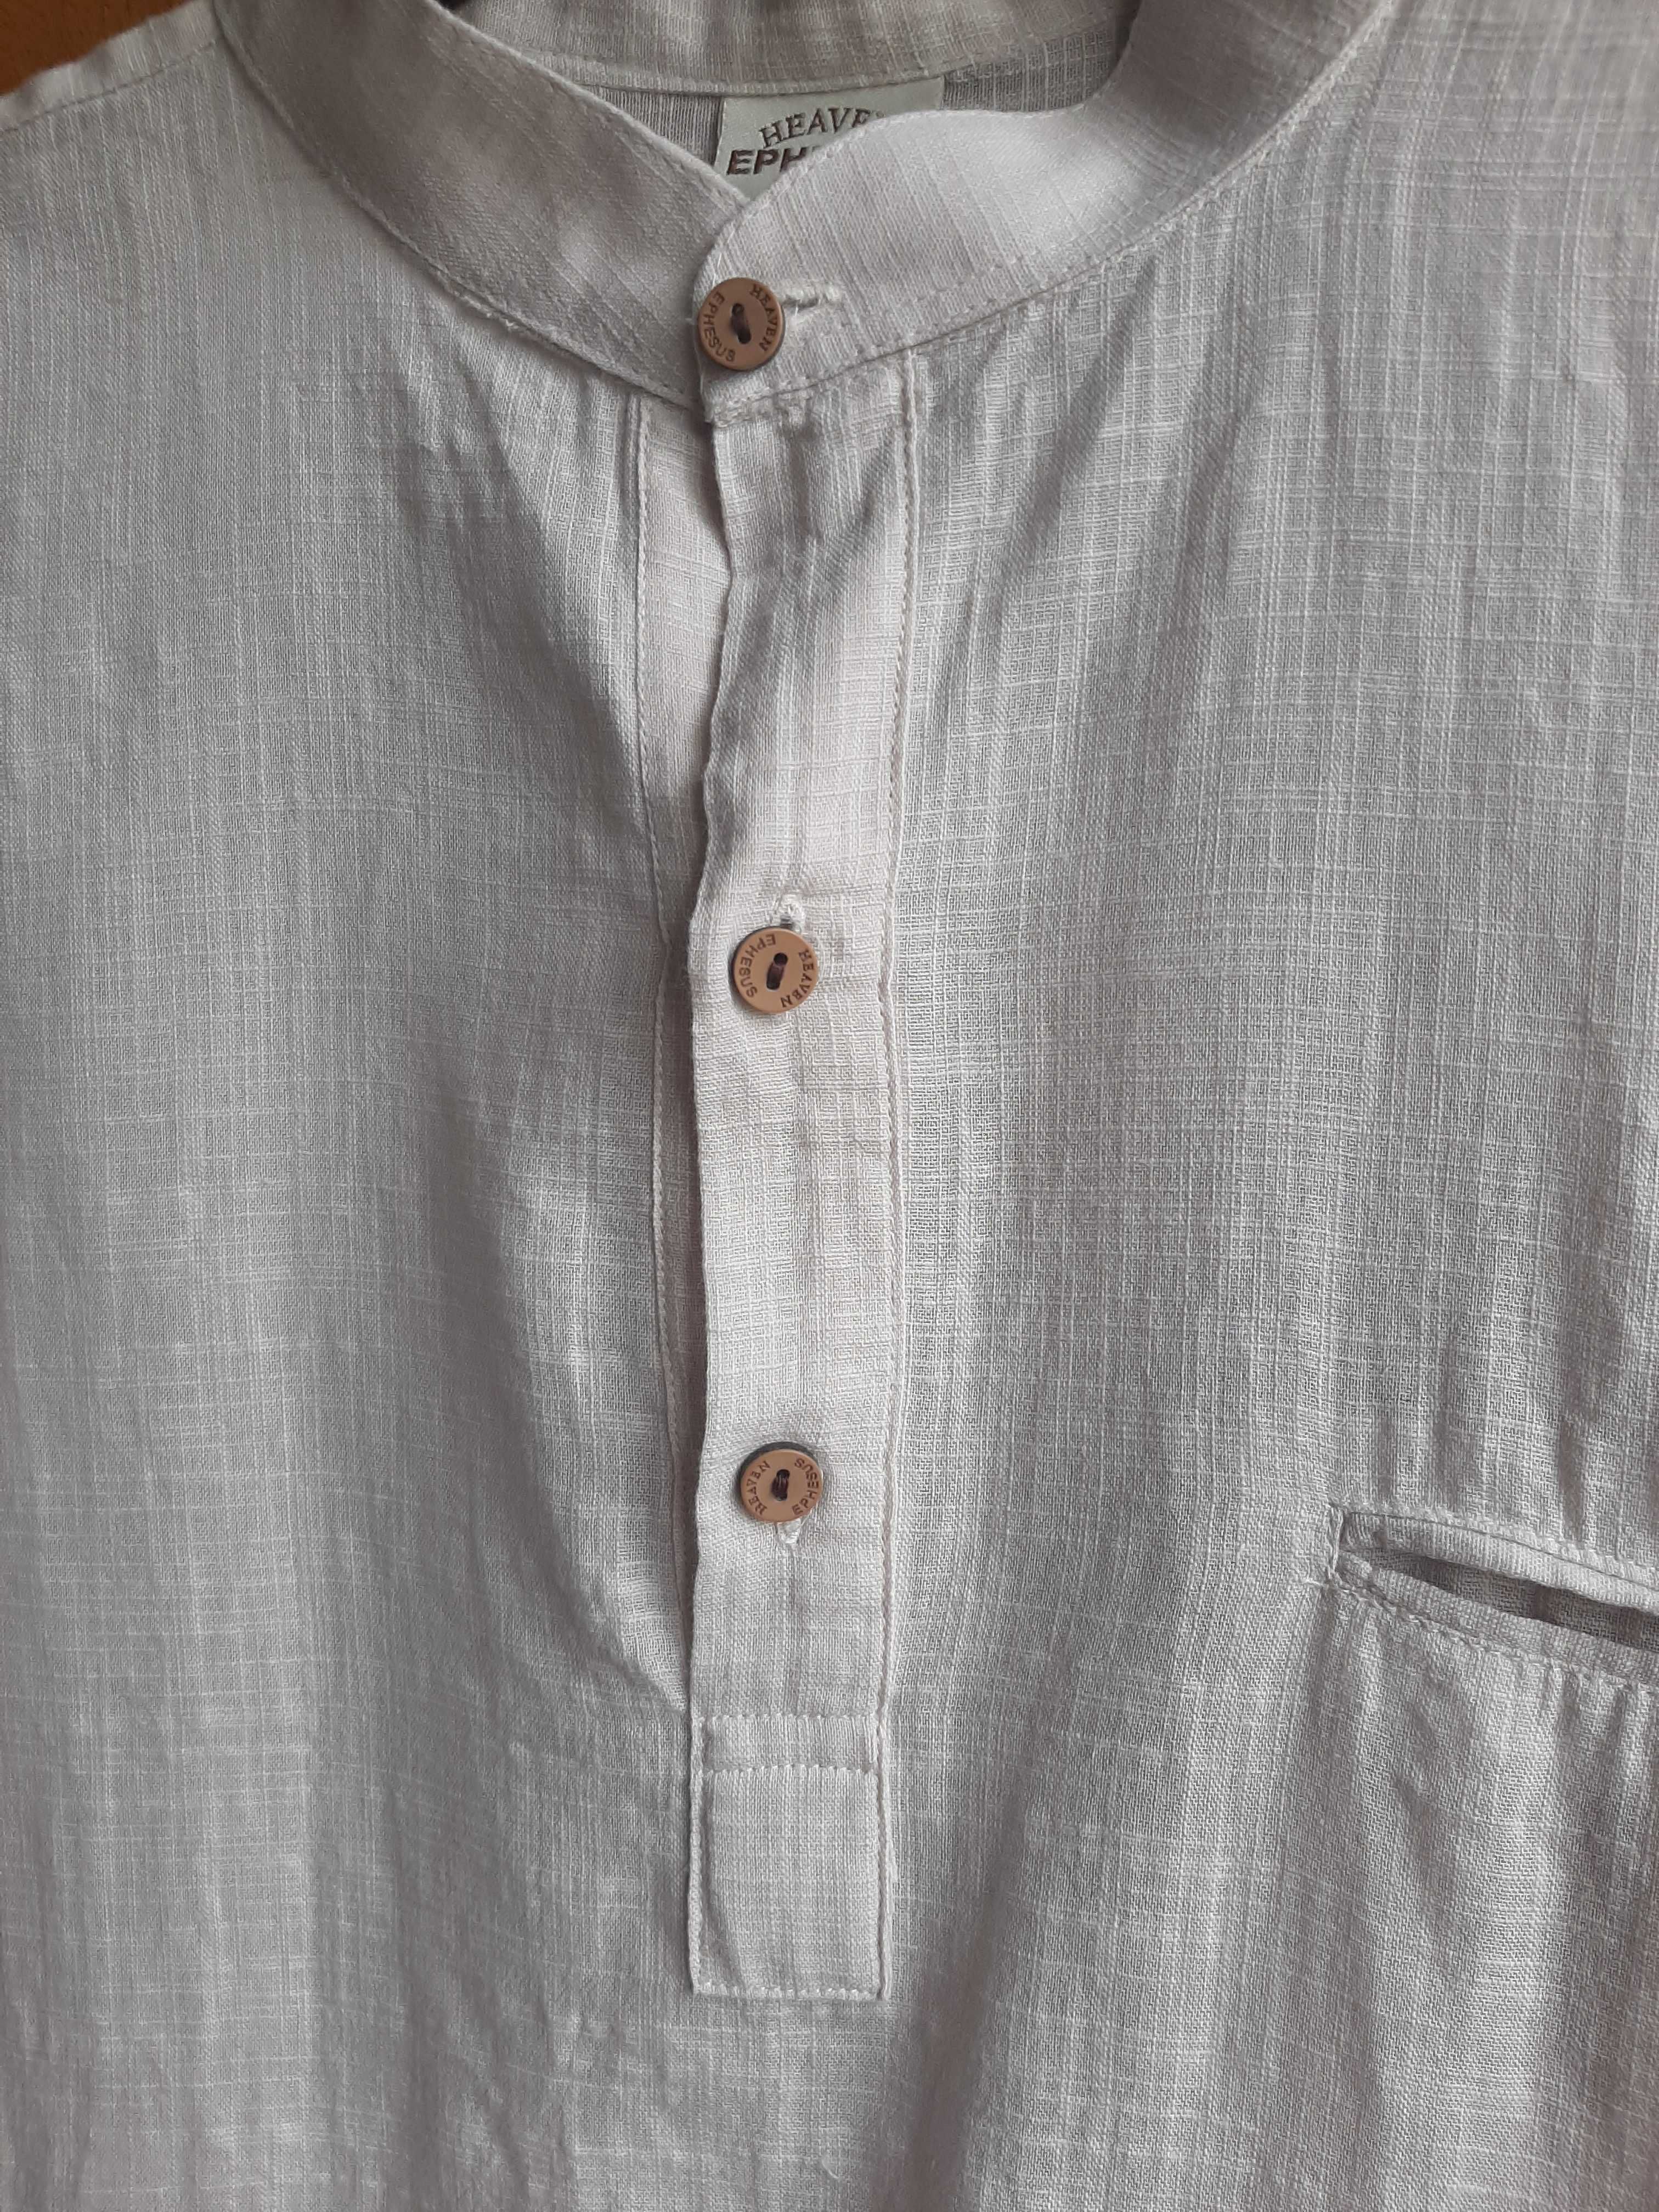 Легкая хлопковая мужская рубашка Нeaven р. М